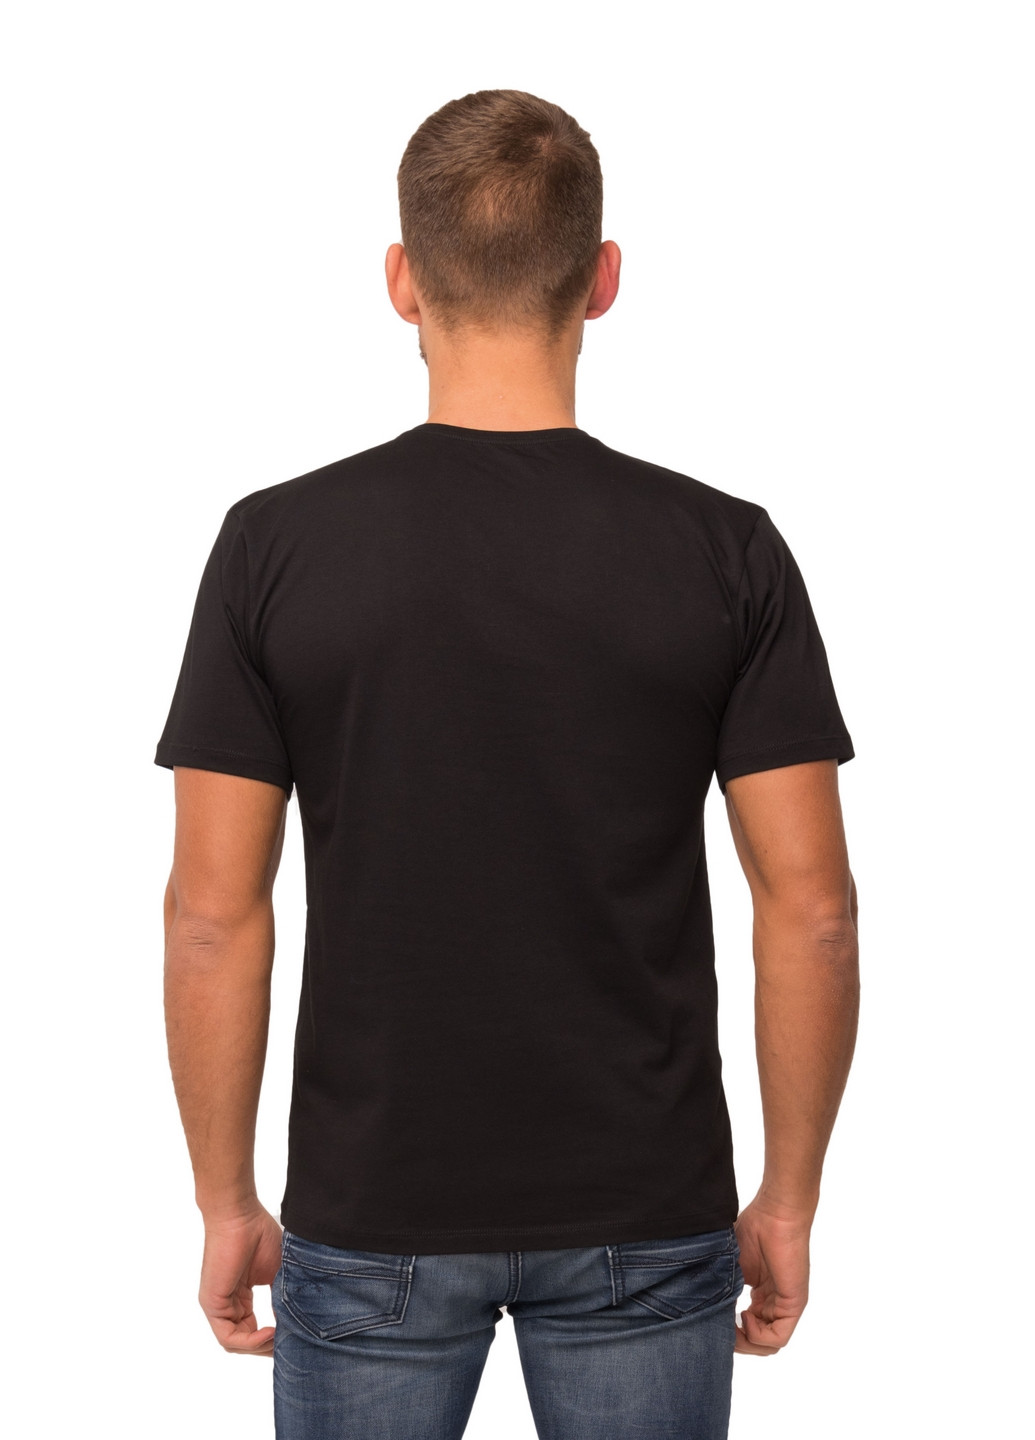 Чорна футболка чоловіча Наталюкс 12-1343